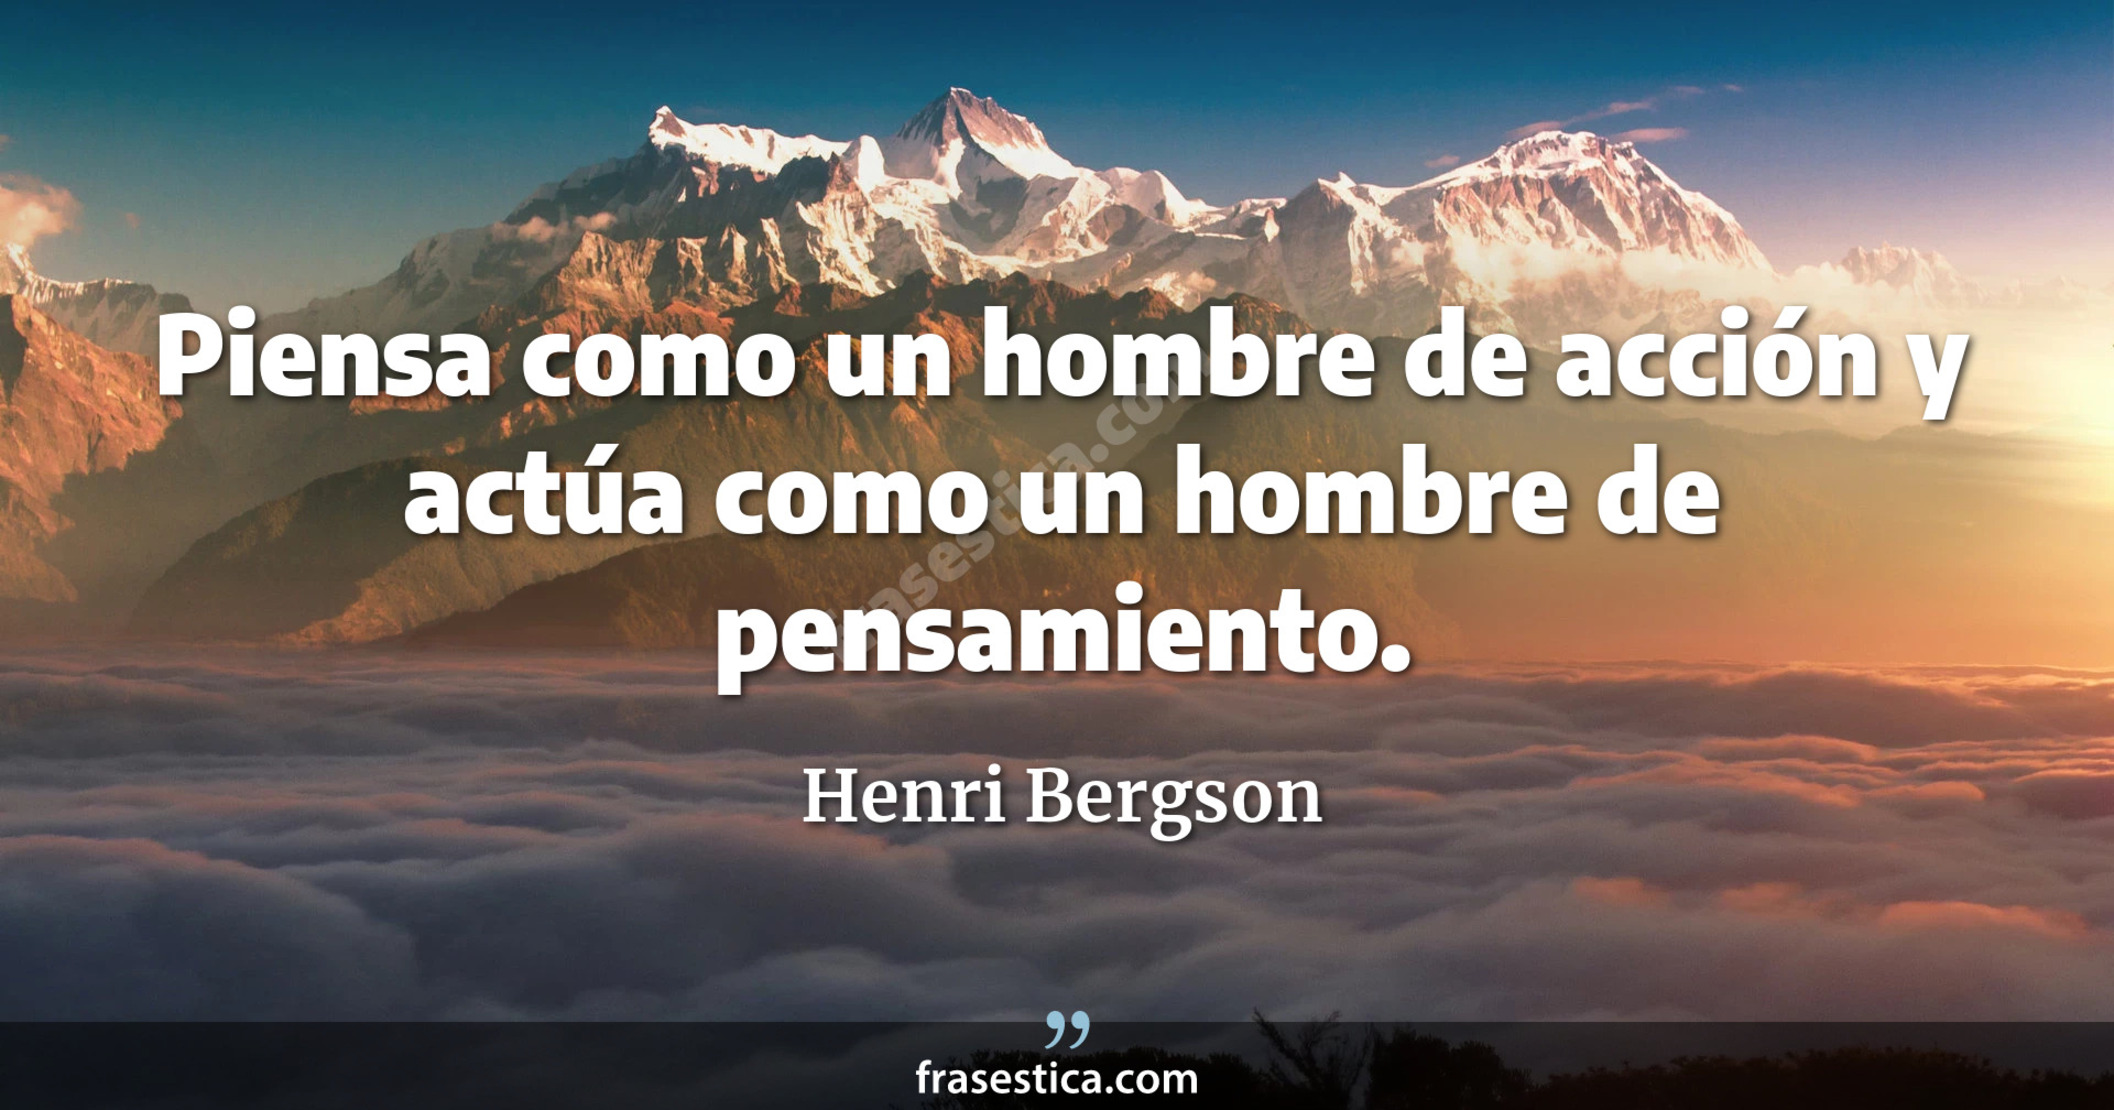 Piensa como un hombre de acción y actúa como un hombre de pensamiento. - Henri Bergson